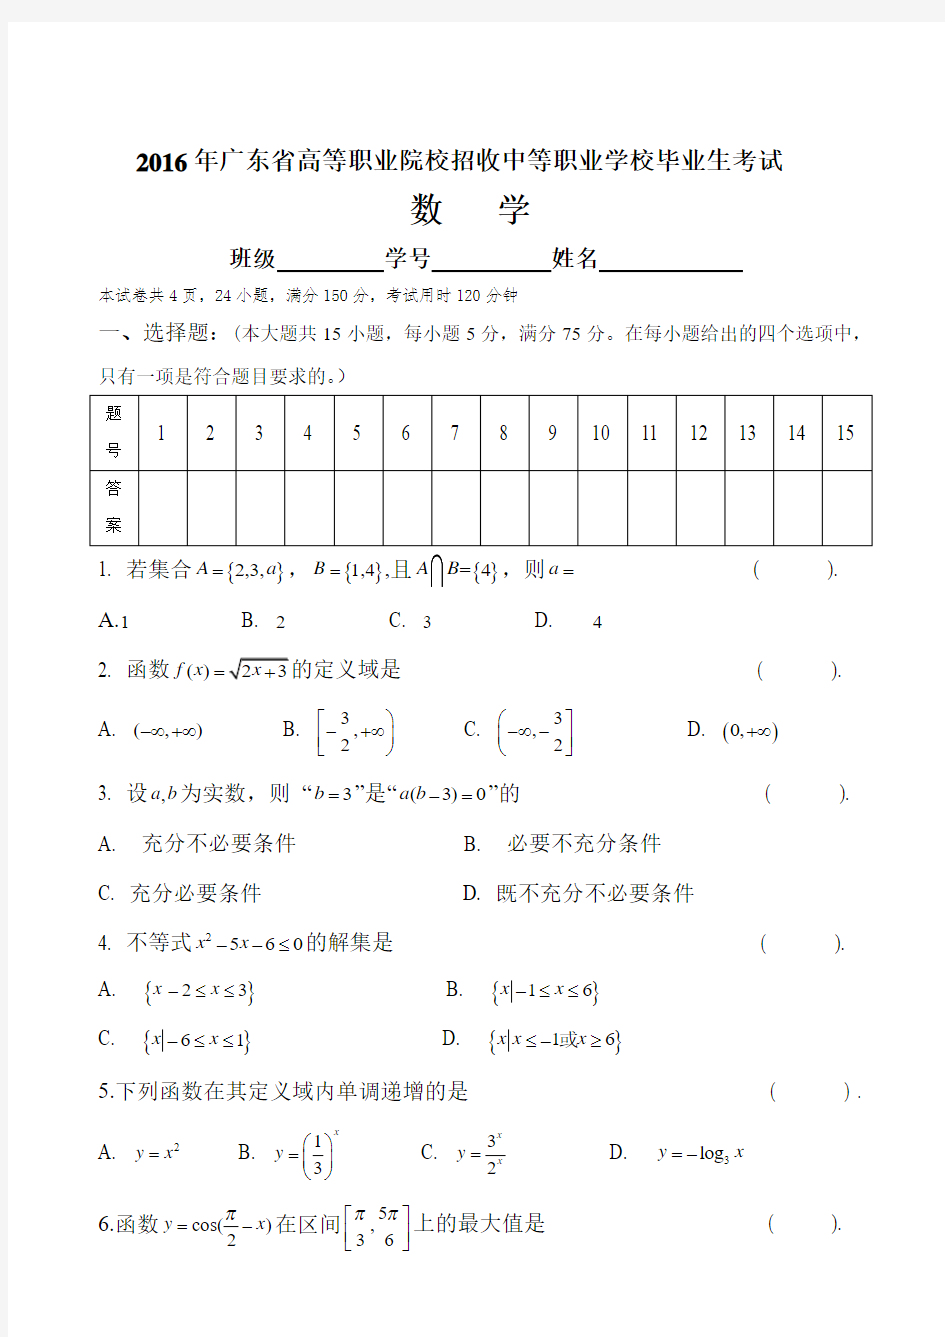 广东省3+证书高职高考数学试卷与参考答案PDF(真题)和答案